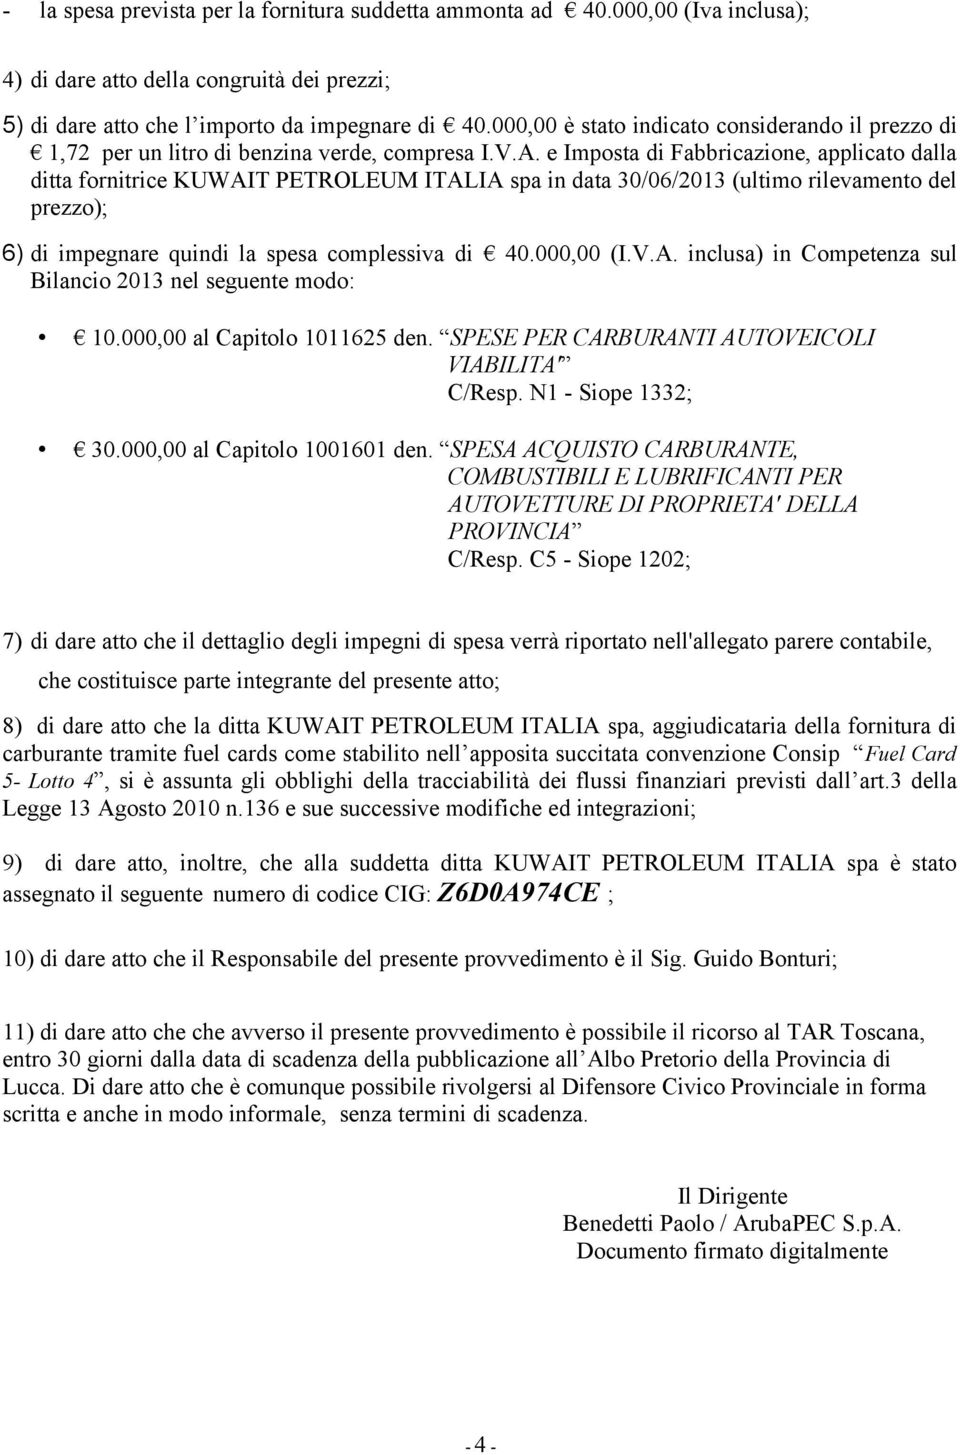 e Imposta di Fabbricazione, applicato dalla ditta fornitrice KUWAIT PETROLEUM ITALIA spa in data 30/06/2013 (ultimo rilevamento del prezzo); 6) di impegnare quindi la spesa complessiva di 40.